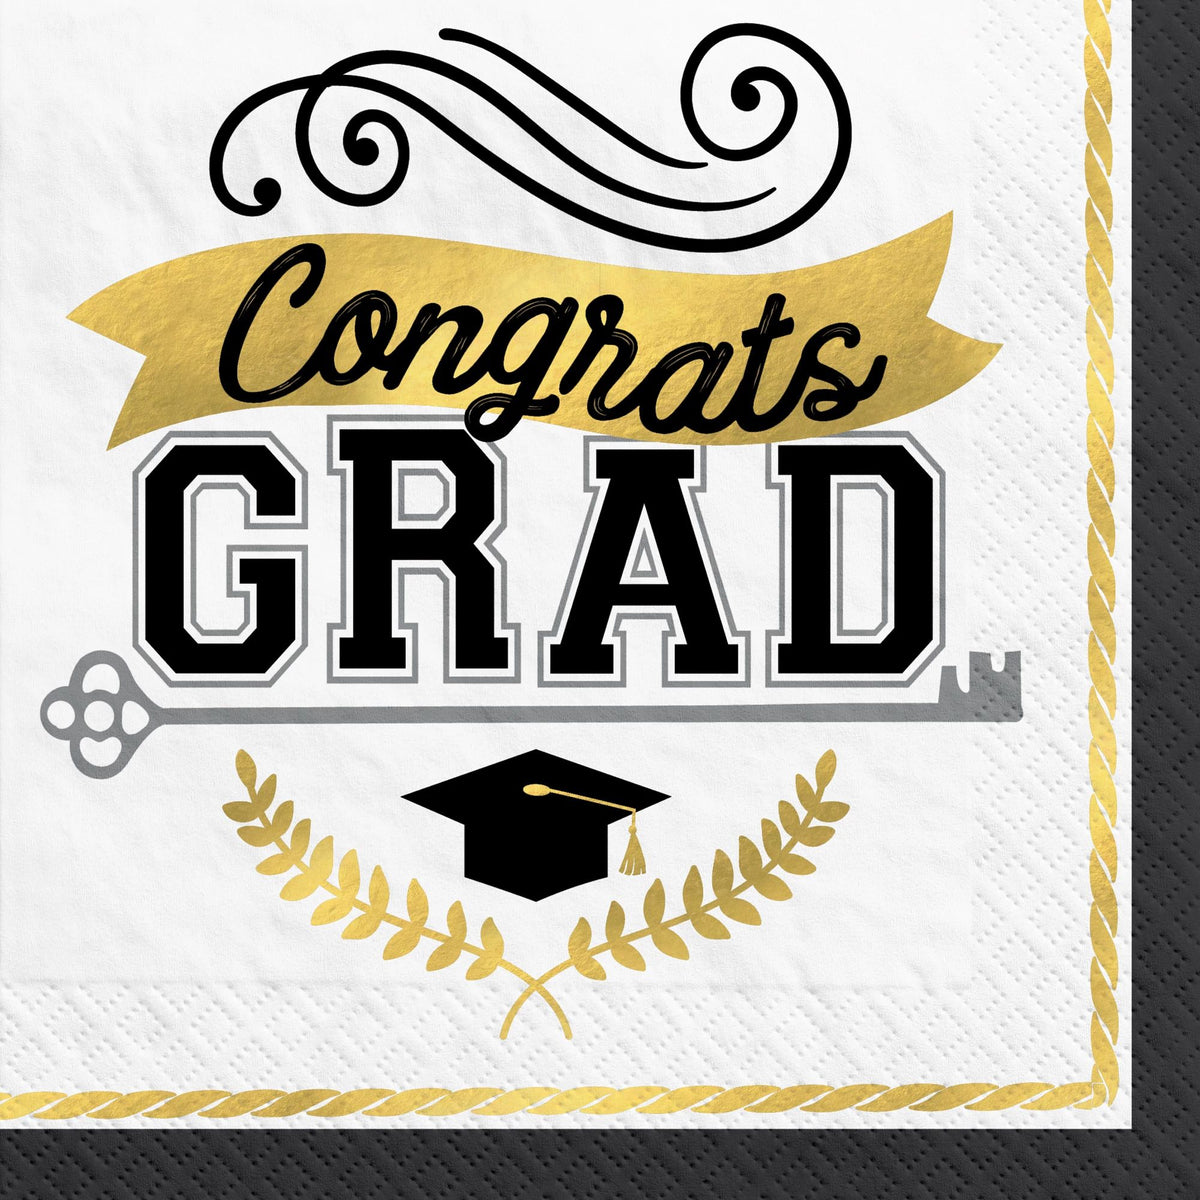 Graduation Achievement Is Key " Congrats Grad" Luncheon Napkins